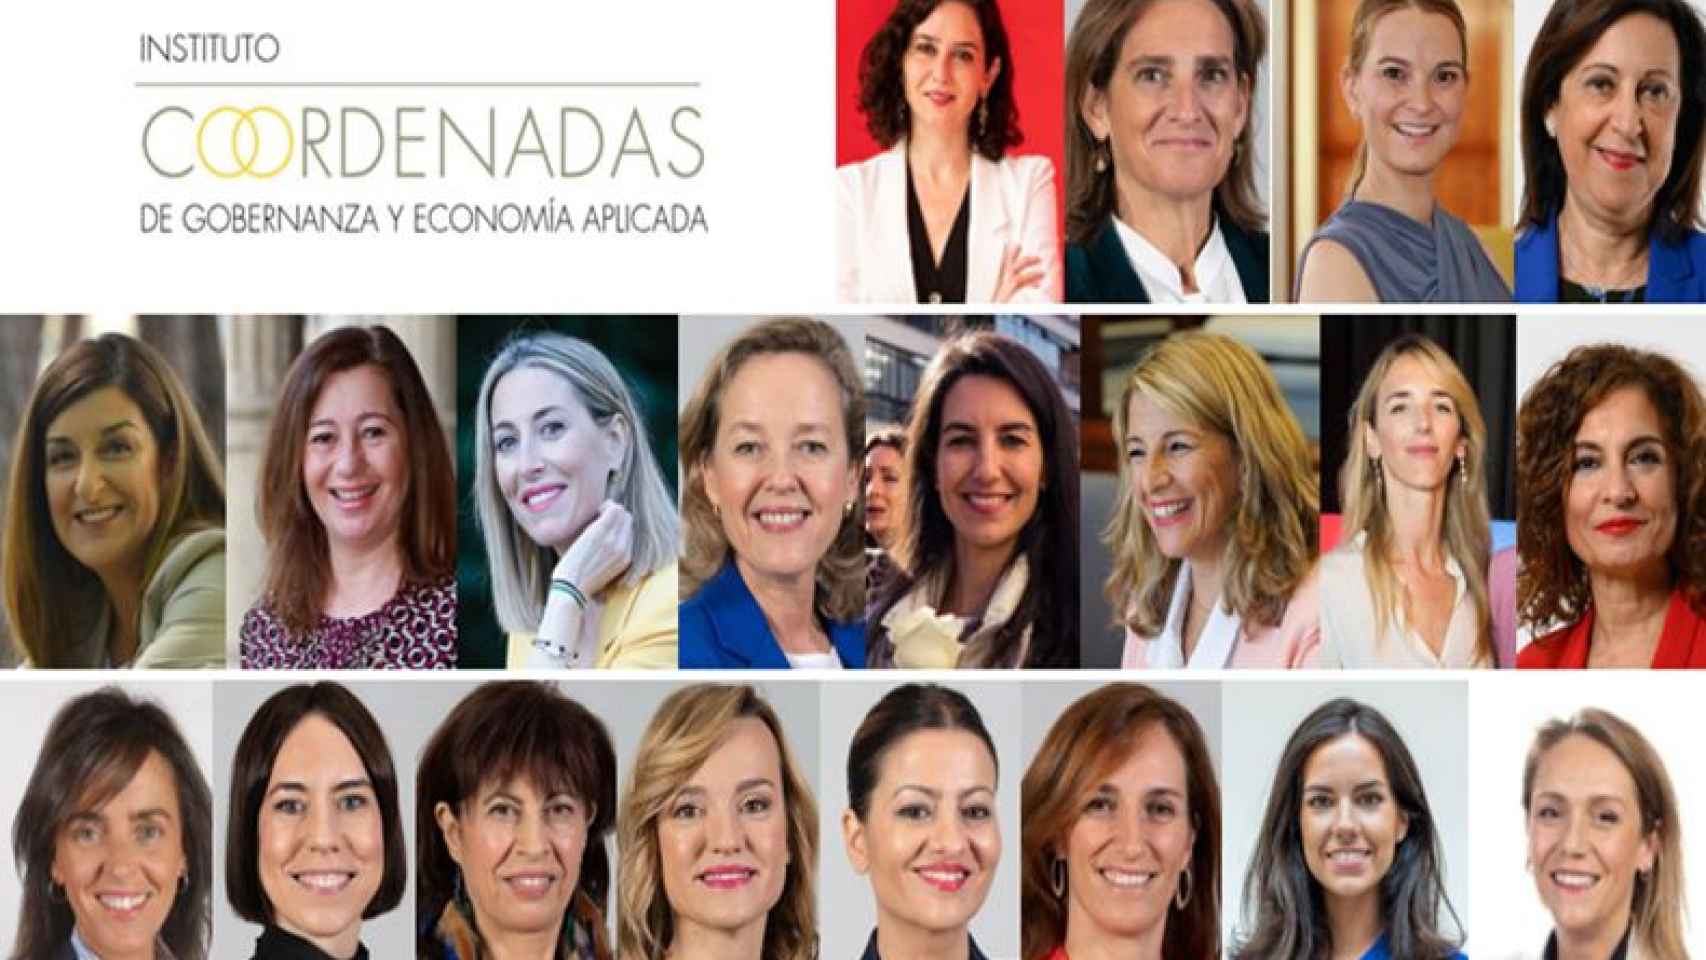 Ayuso, Prohens, Montero o Redondo, entre las 20 mujeres que manejan los hilos de la política española, según el Instituto Coordenadas | Imagen del Instituto Coordenadas